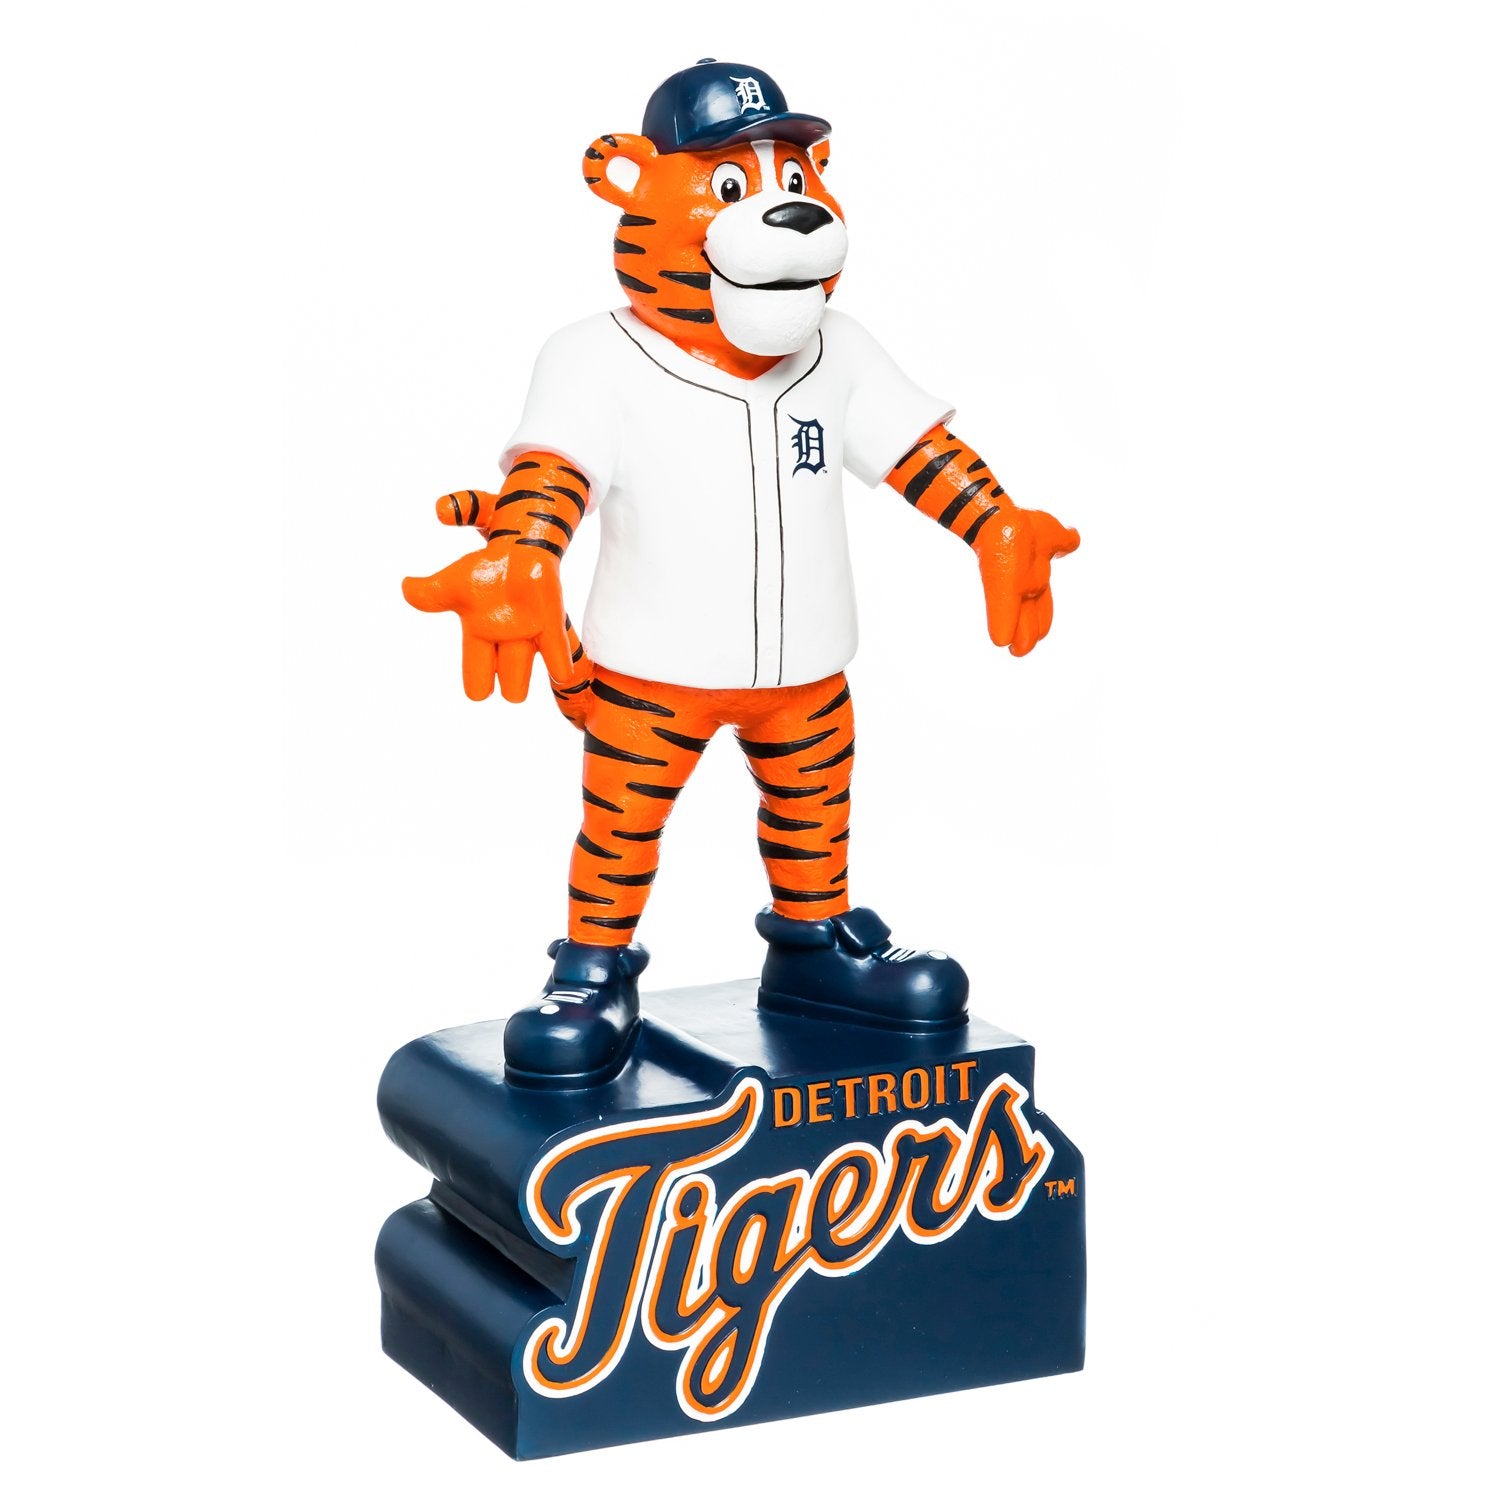 Detroit Tigers, Mascot Statue